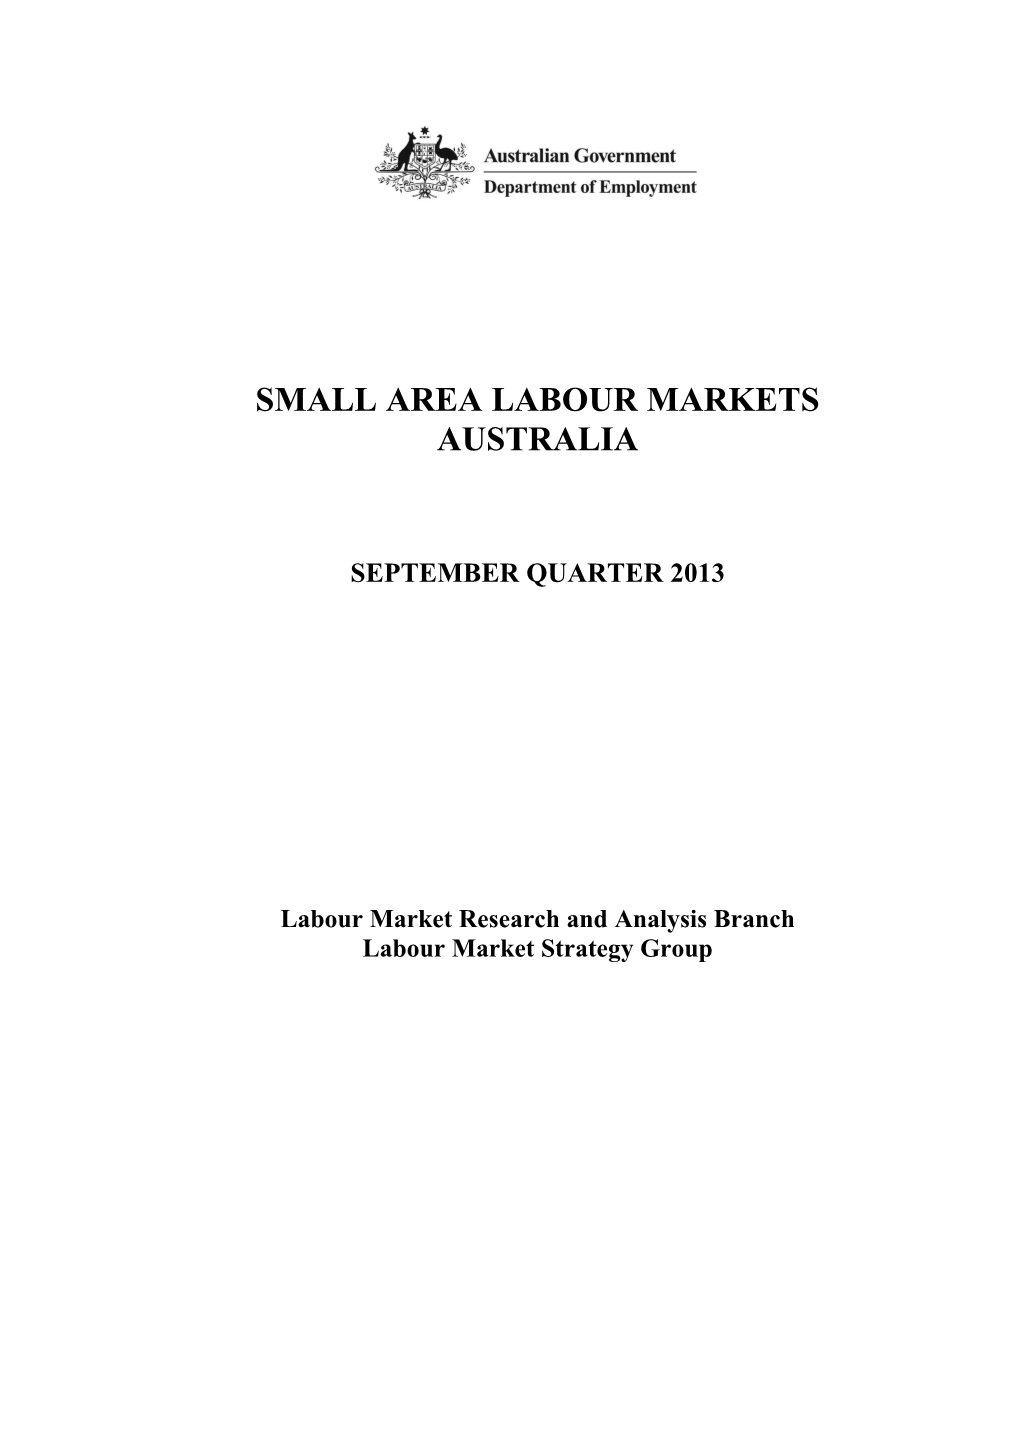 Small Area Labour Markets September Quarter 20131